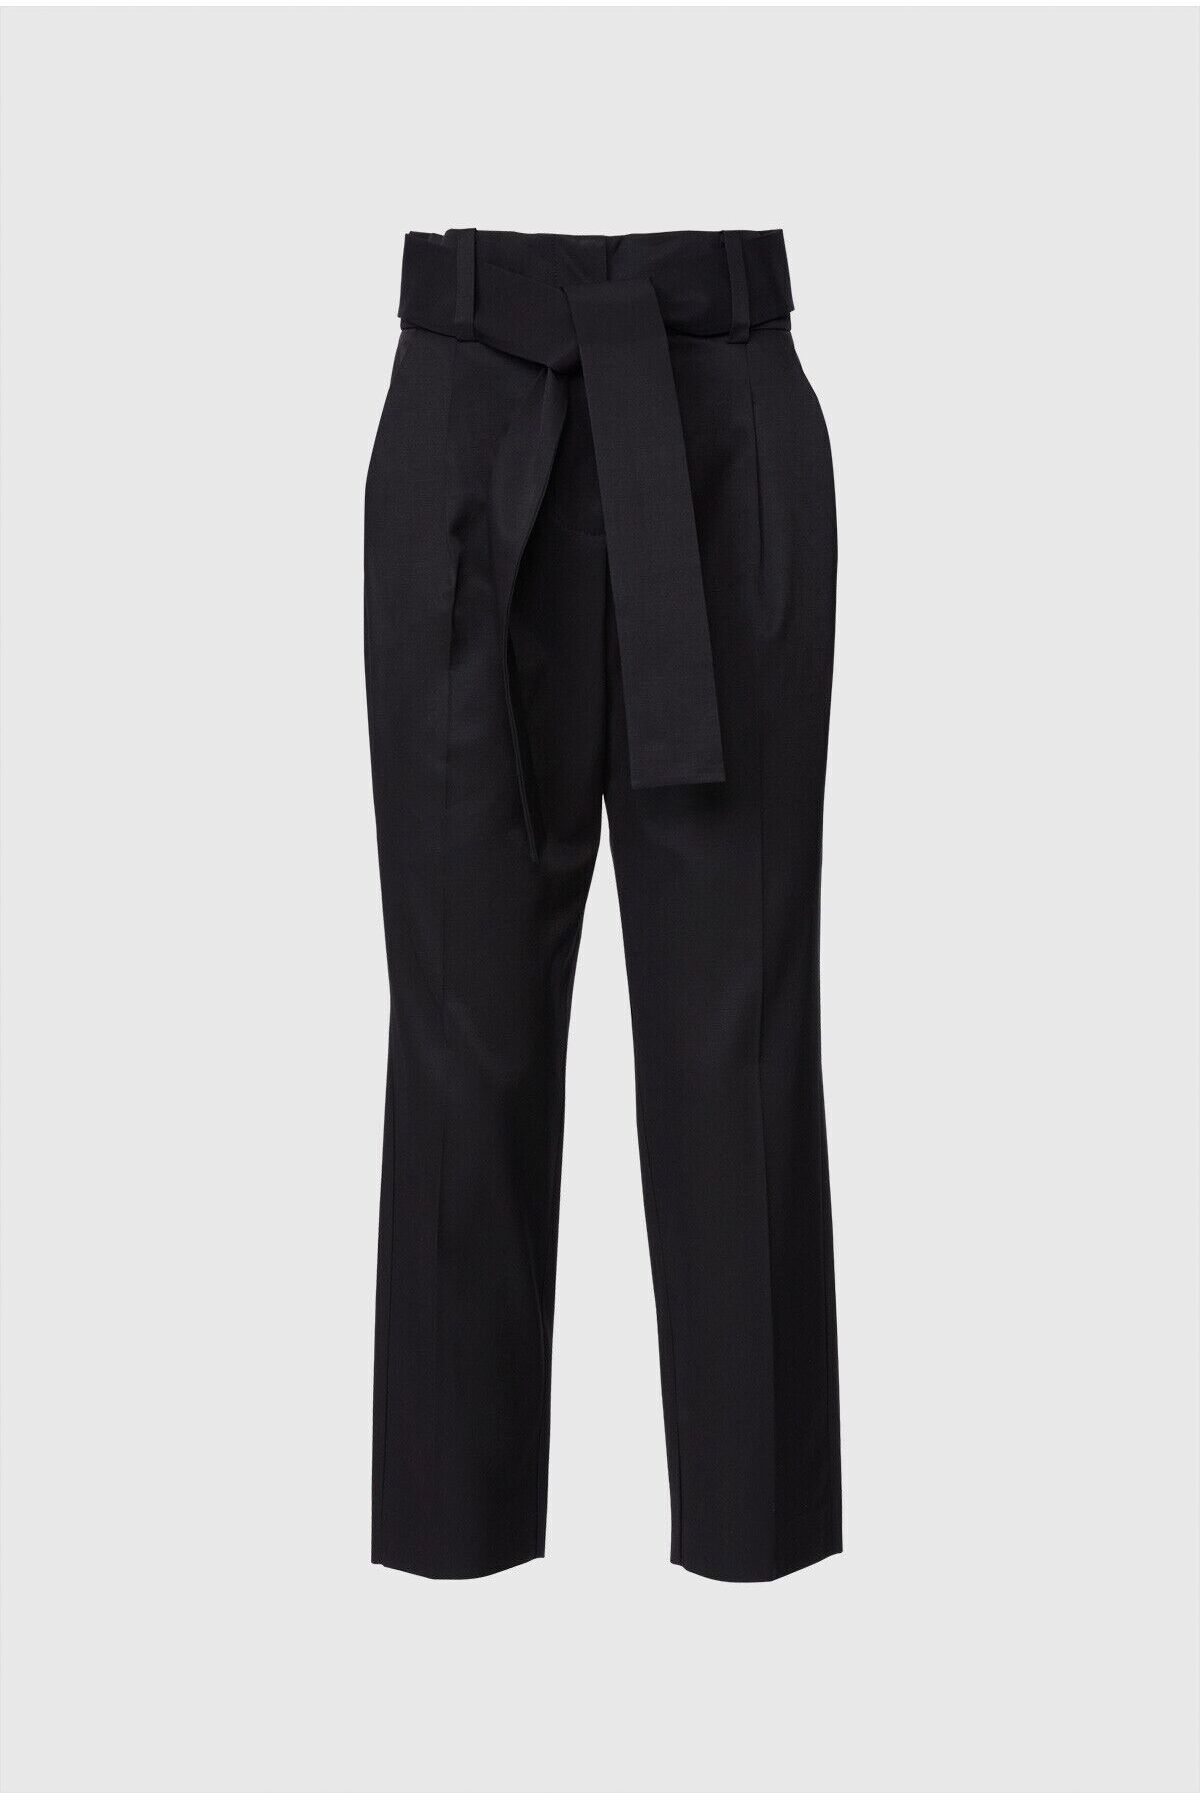 GIZIA Yüksek Bel Kuşaklı Bilek Boy Siyah Pantolon